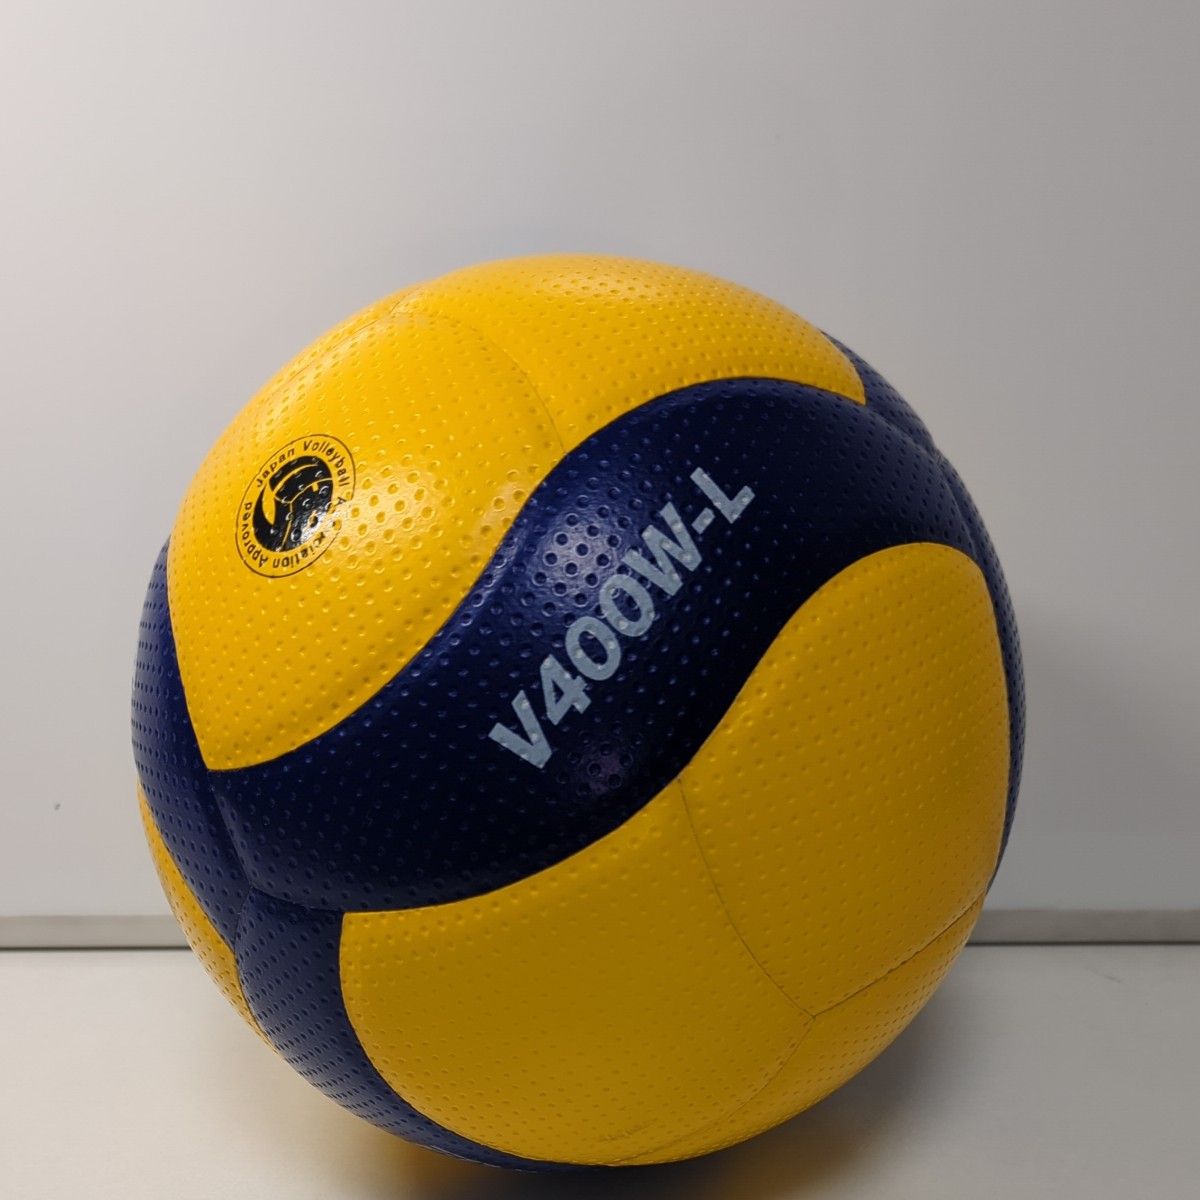 ミカサ(MIKASA) バレーボール 軽量4号 日本バレーボール協会検定球 小学生用 イエロー/ブルー V400W-L